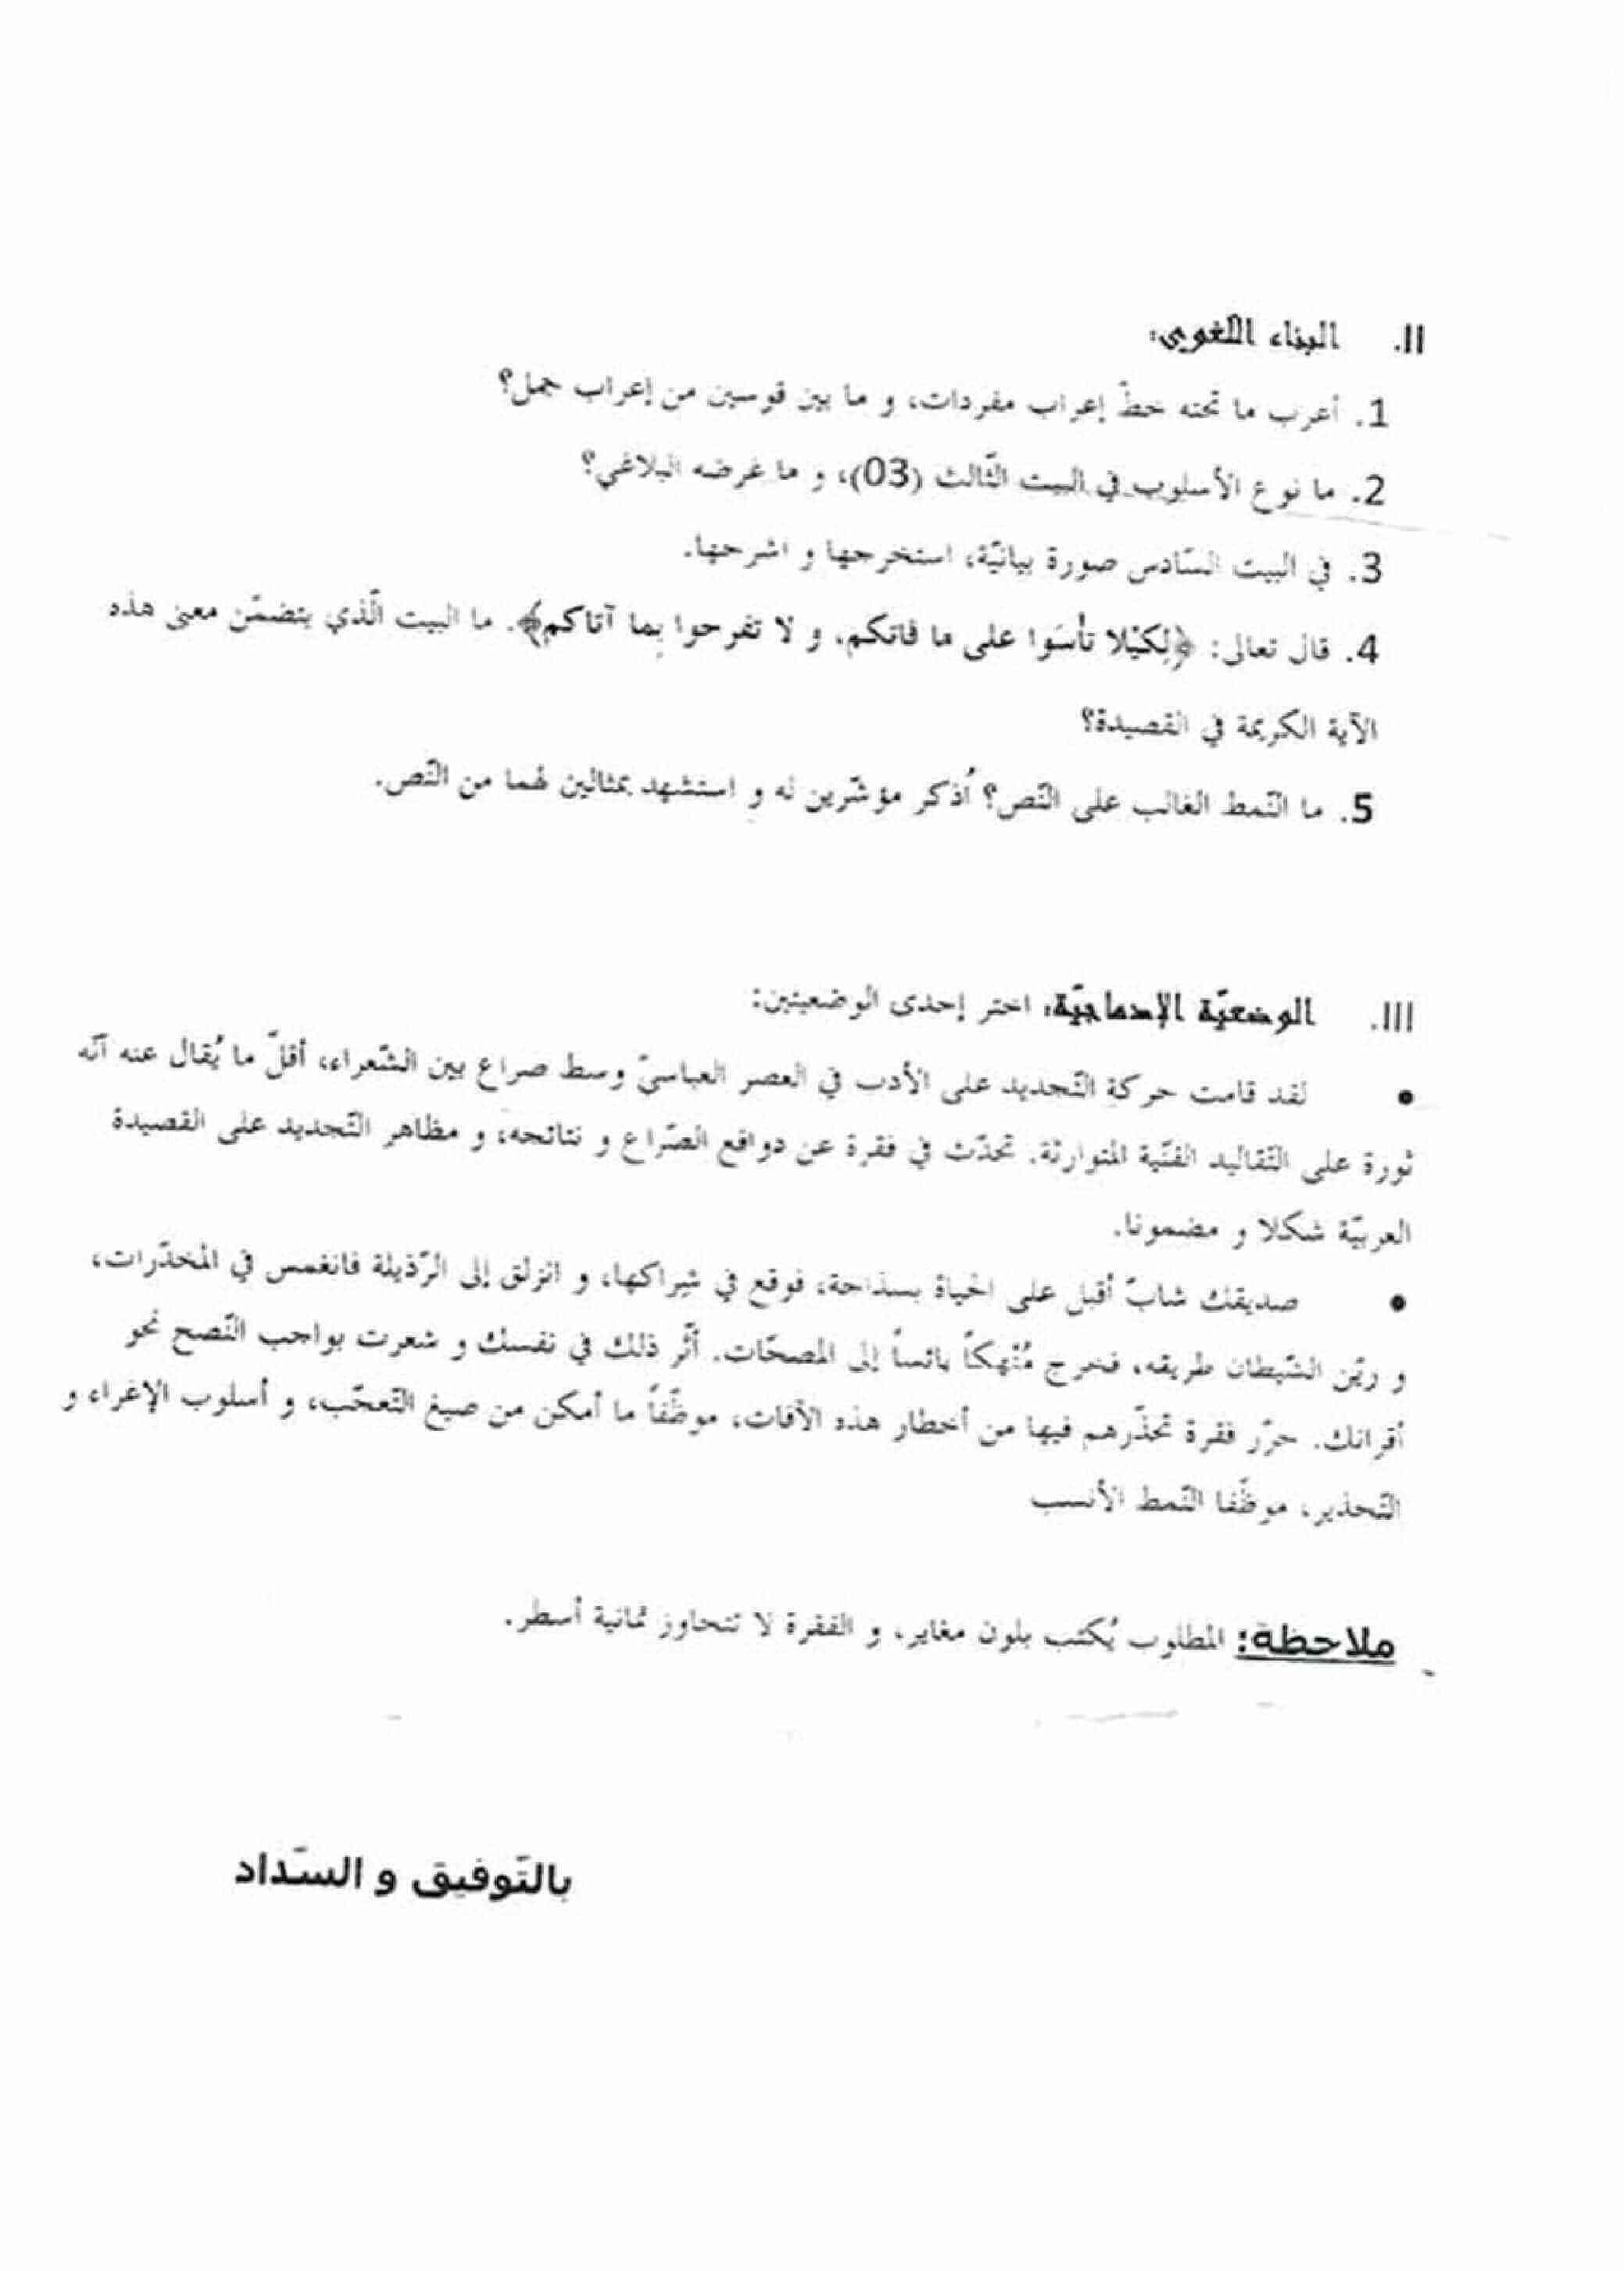 اختبار الفصل الأول في اللغة العربية للسنة ثانية ثانوي شعبة آداب و فلسفة النموذج 2